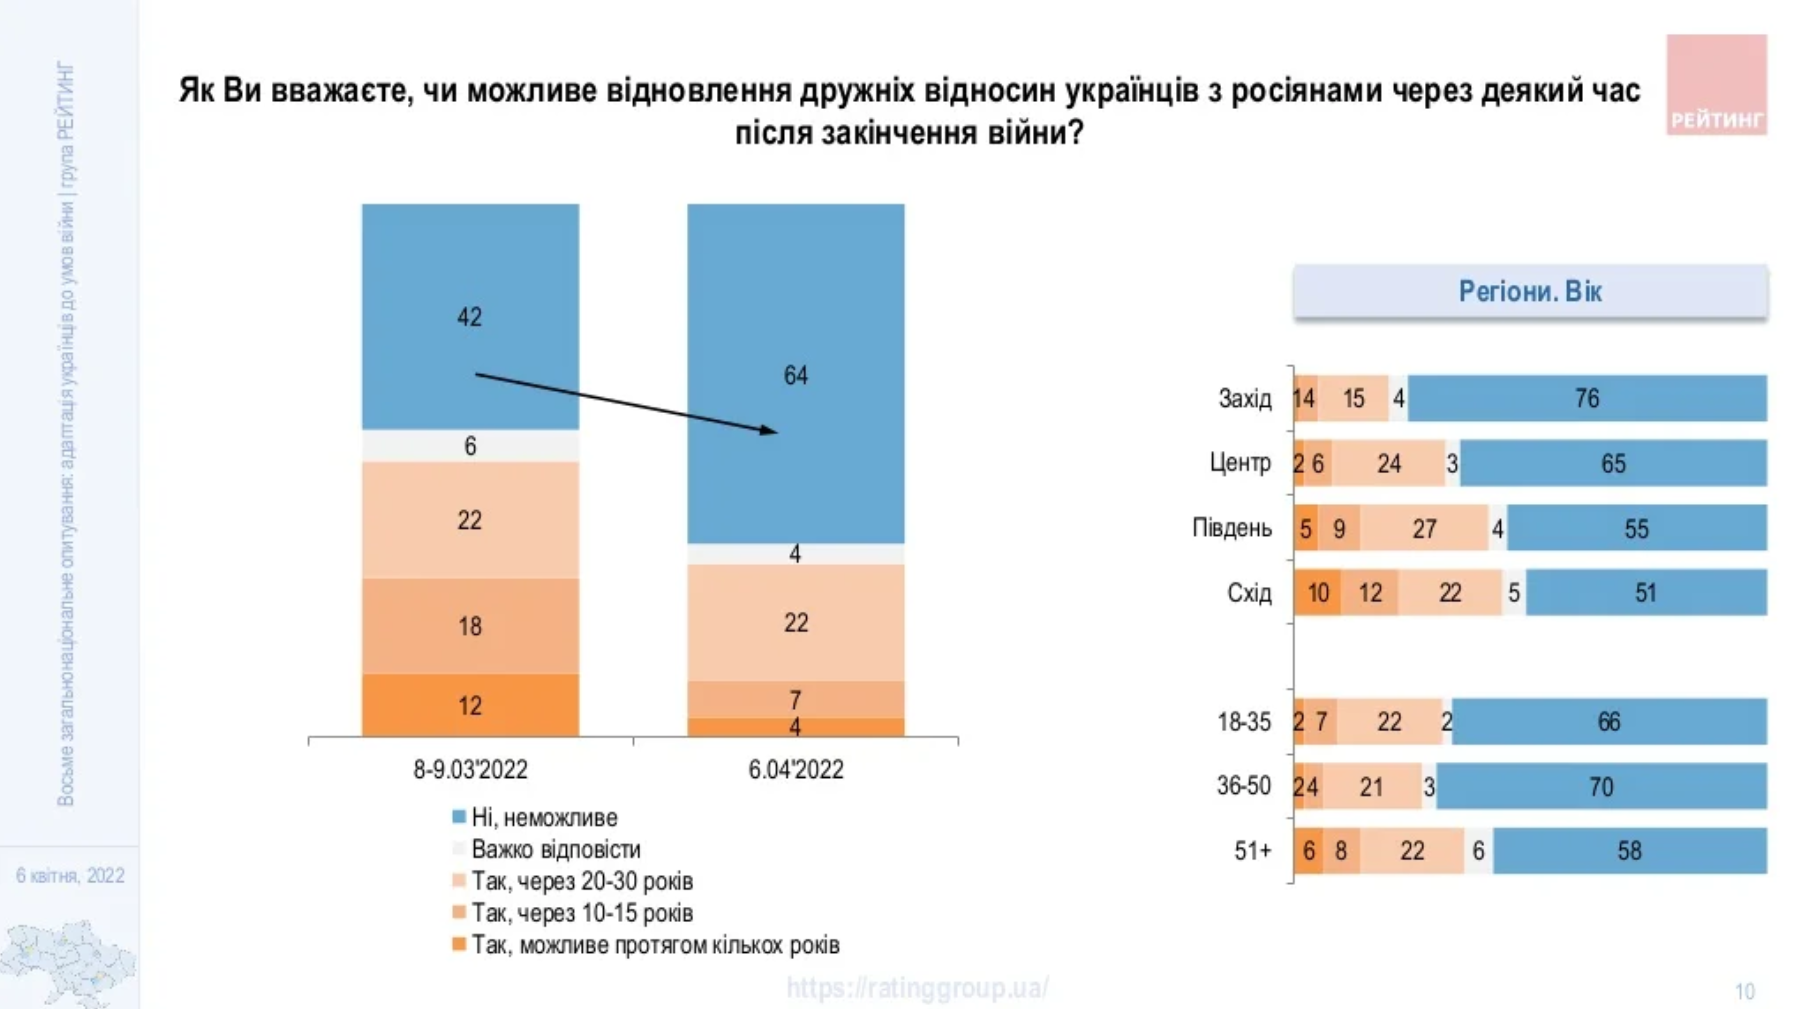 Большинство украинцев считают невозможным возобновление дружеских отношений с россиянами